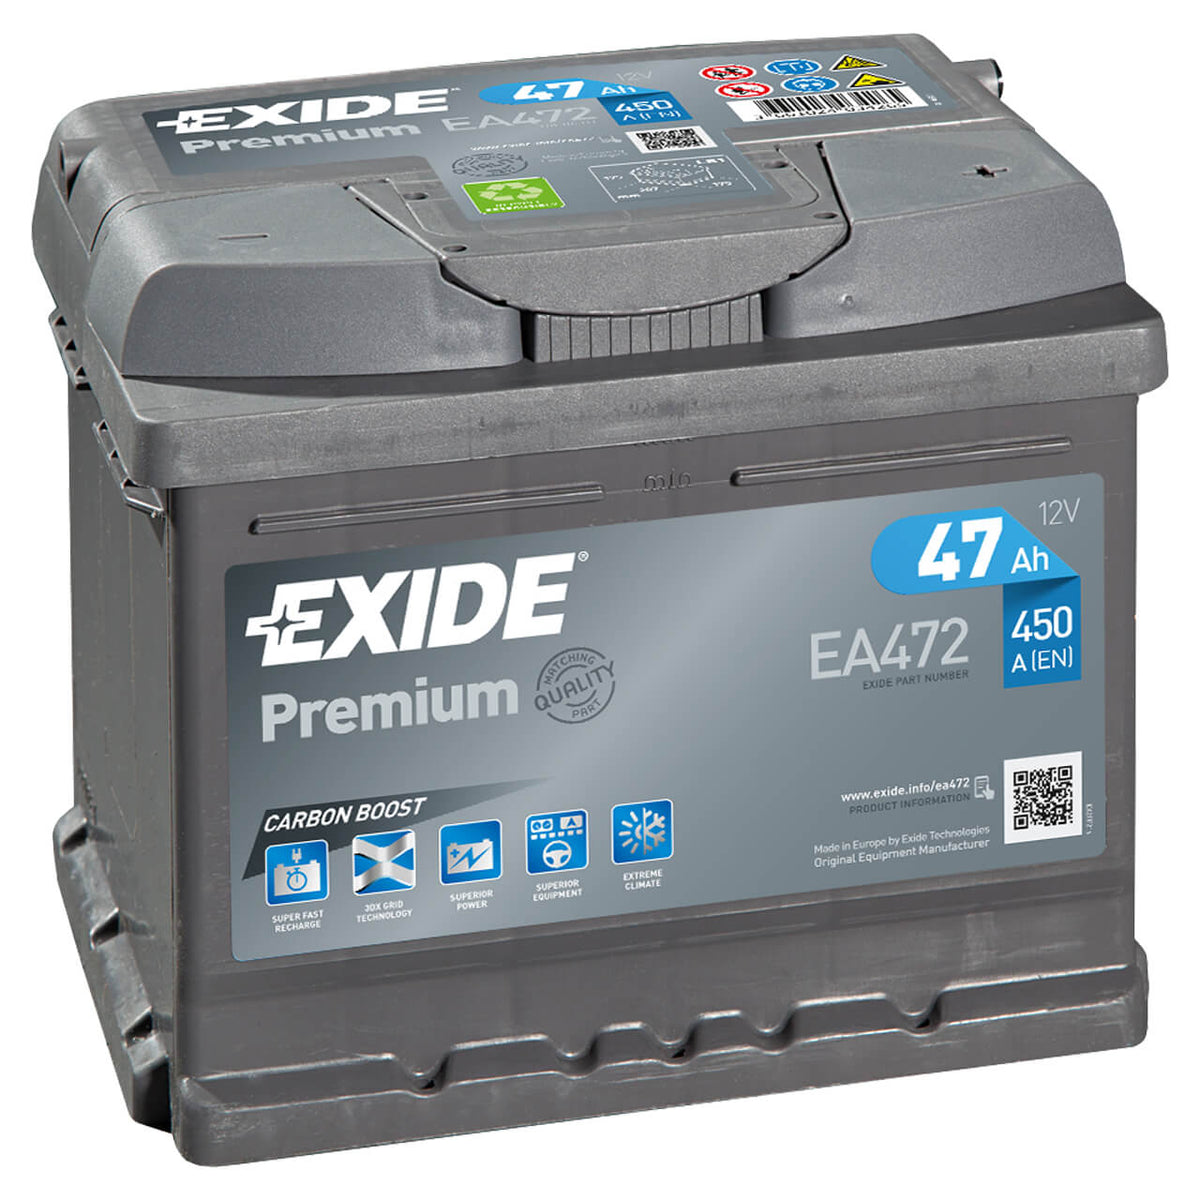 Exide Premium Carbon Boost EA472 12V 47Ah 450A/EN